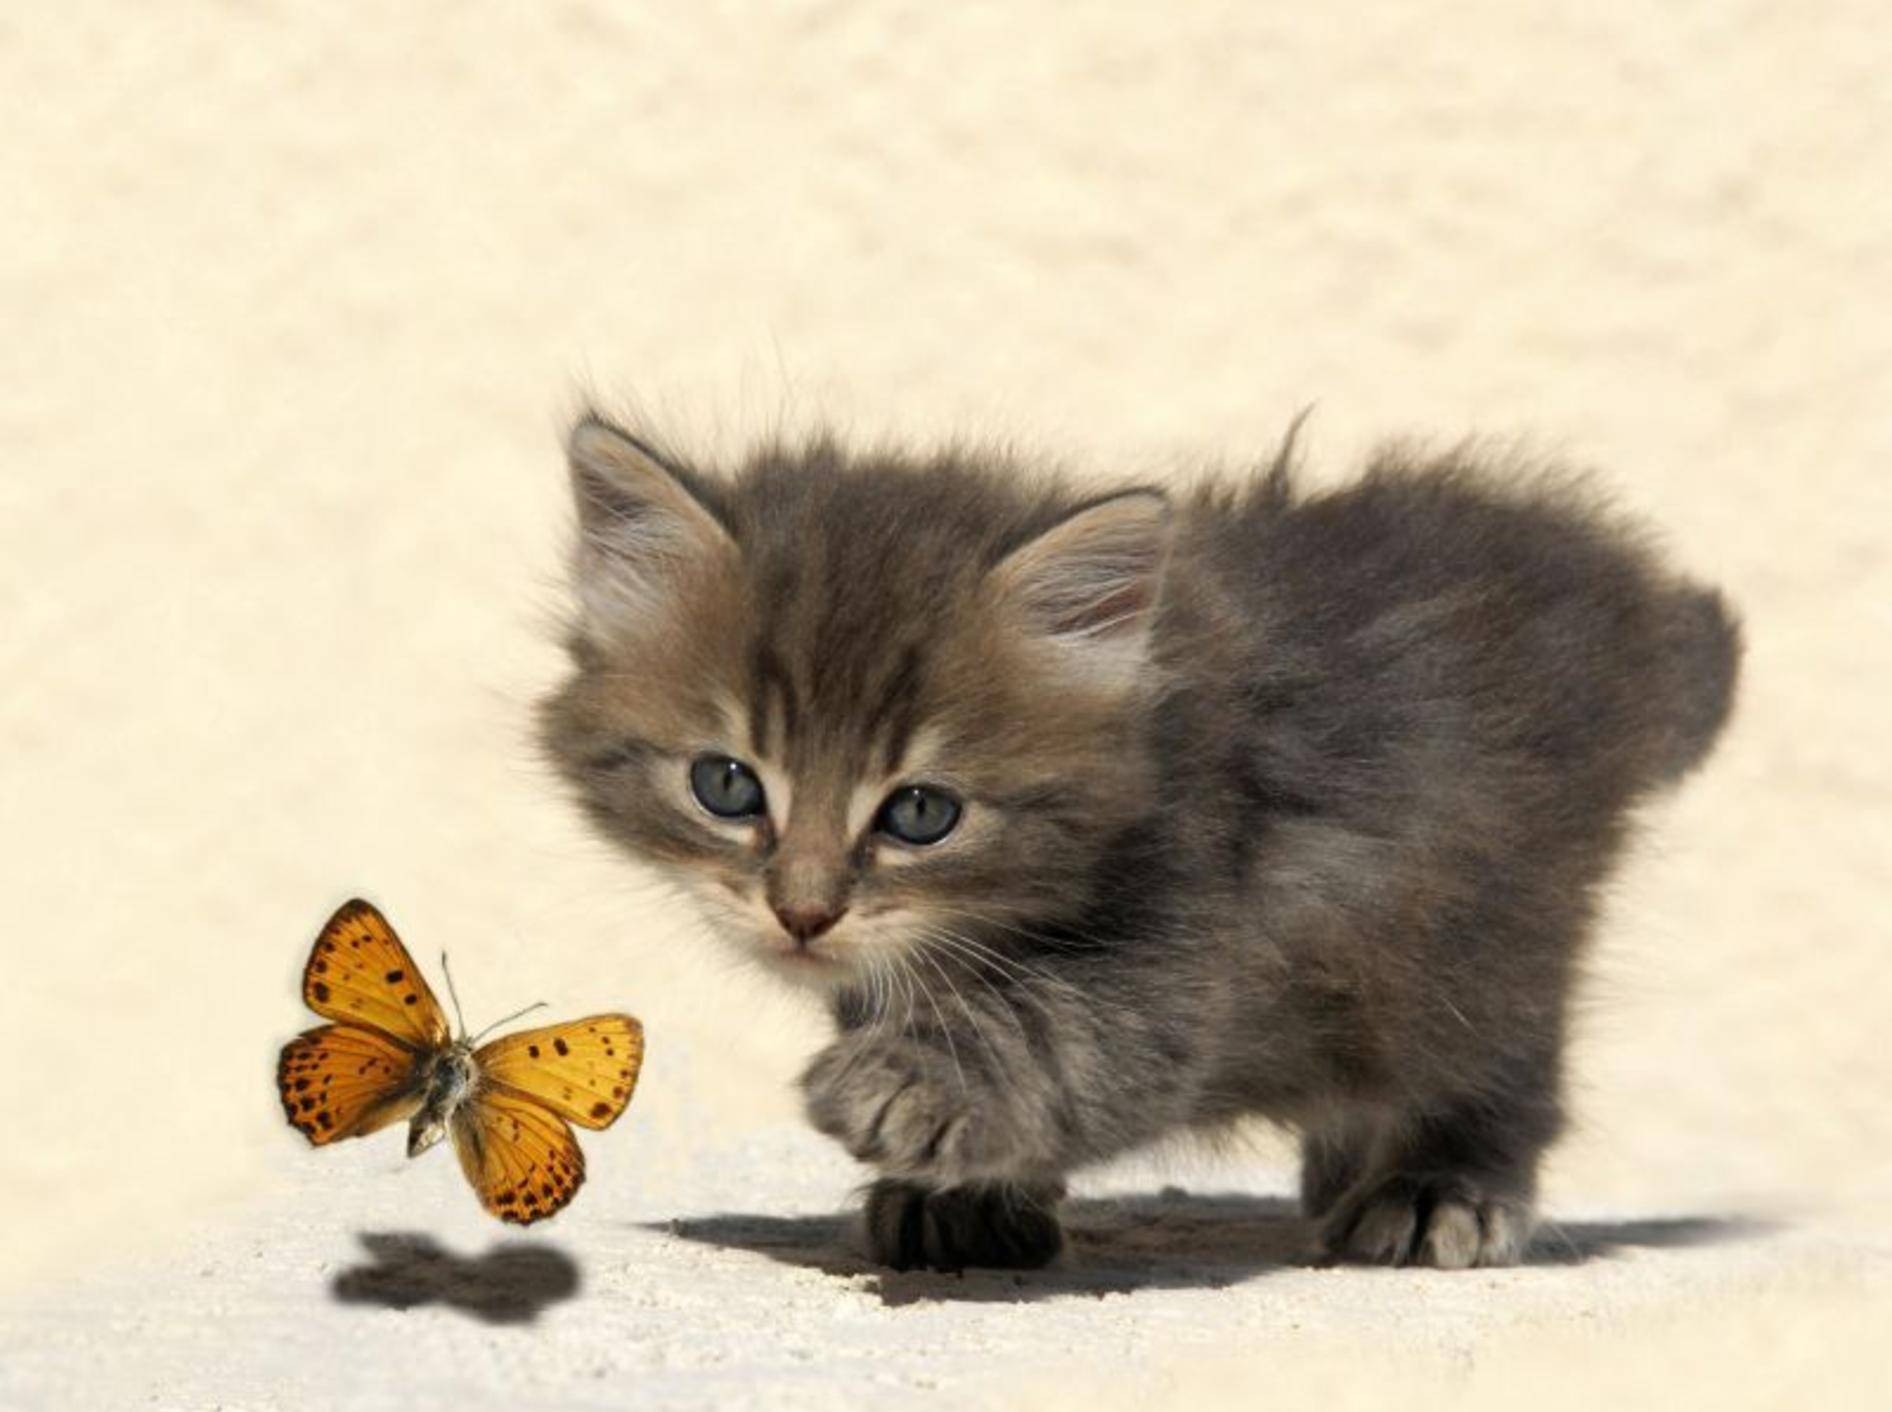 Katzenbaby und Schmetterling: Begegnung im Sonnenschein — Bild: Shutterstock / cynoclub